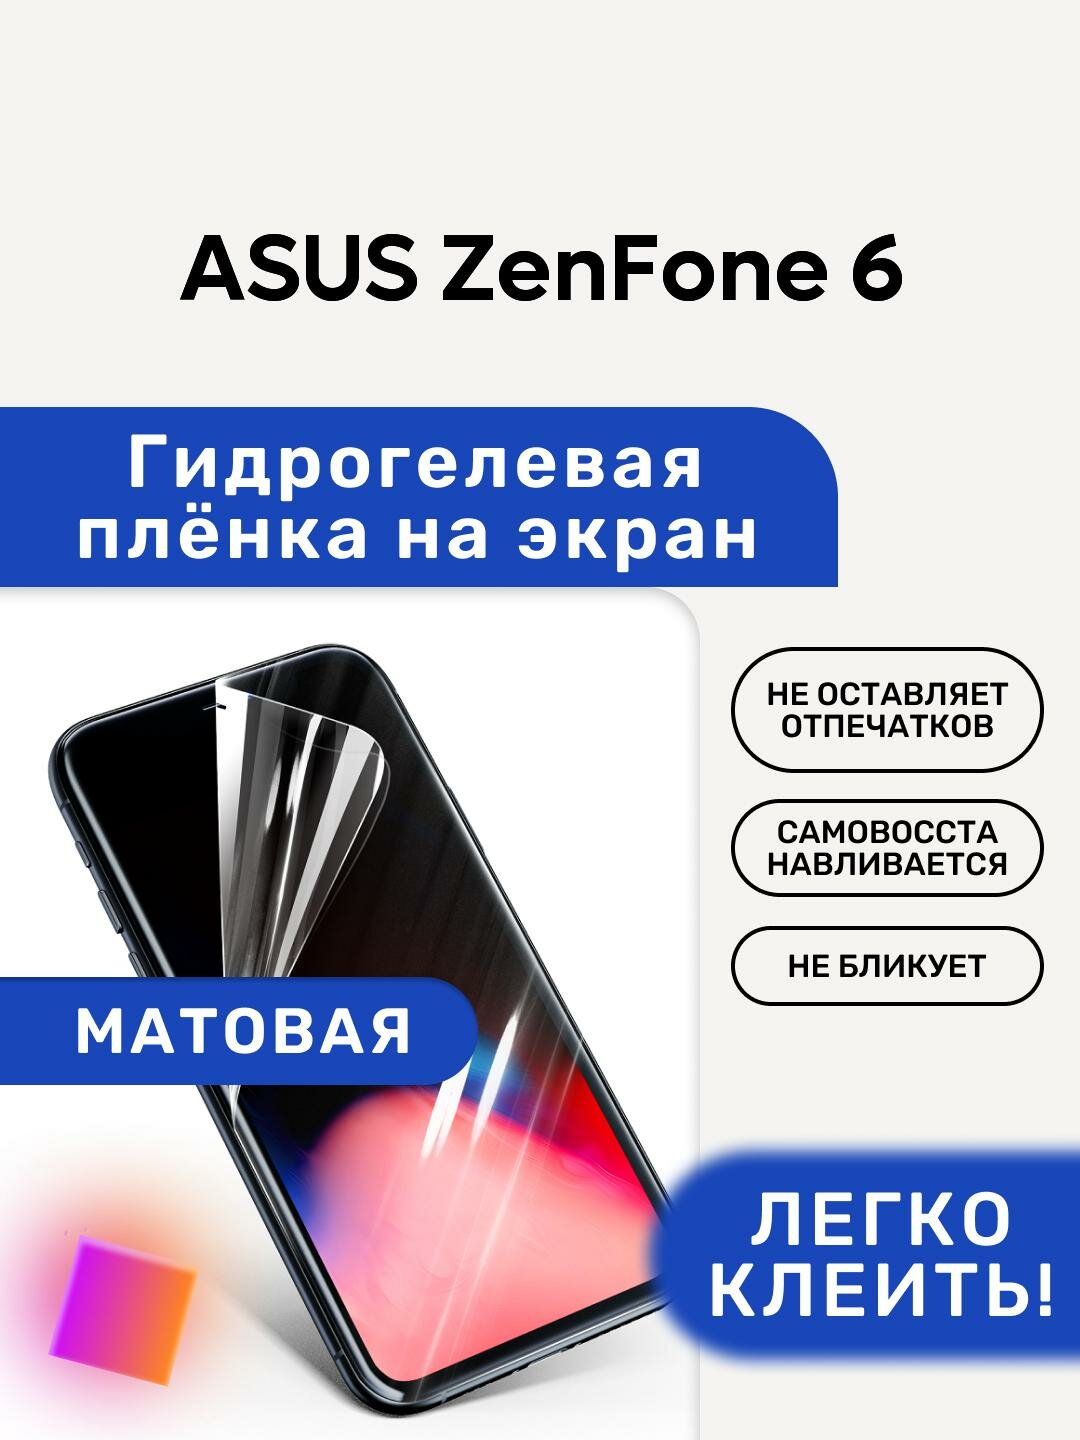 Матовая Гидрогелевая плёнка, полиуретановая, защита экрана ASUS ZenFone 6